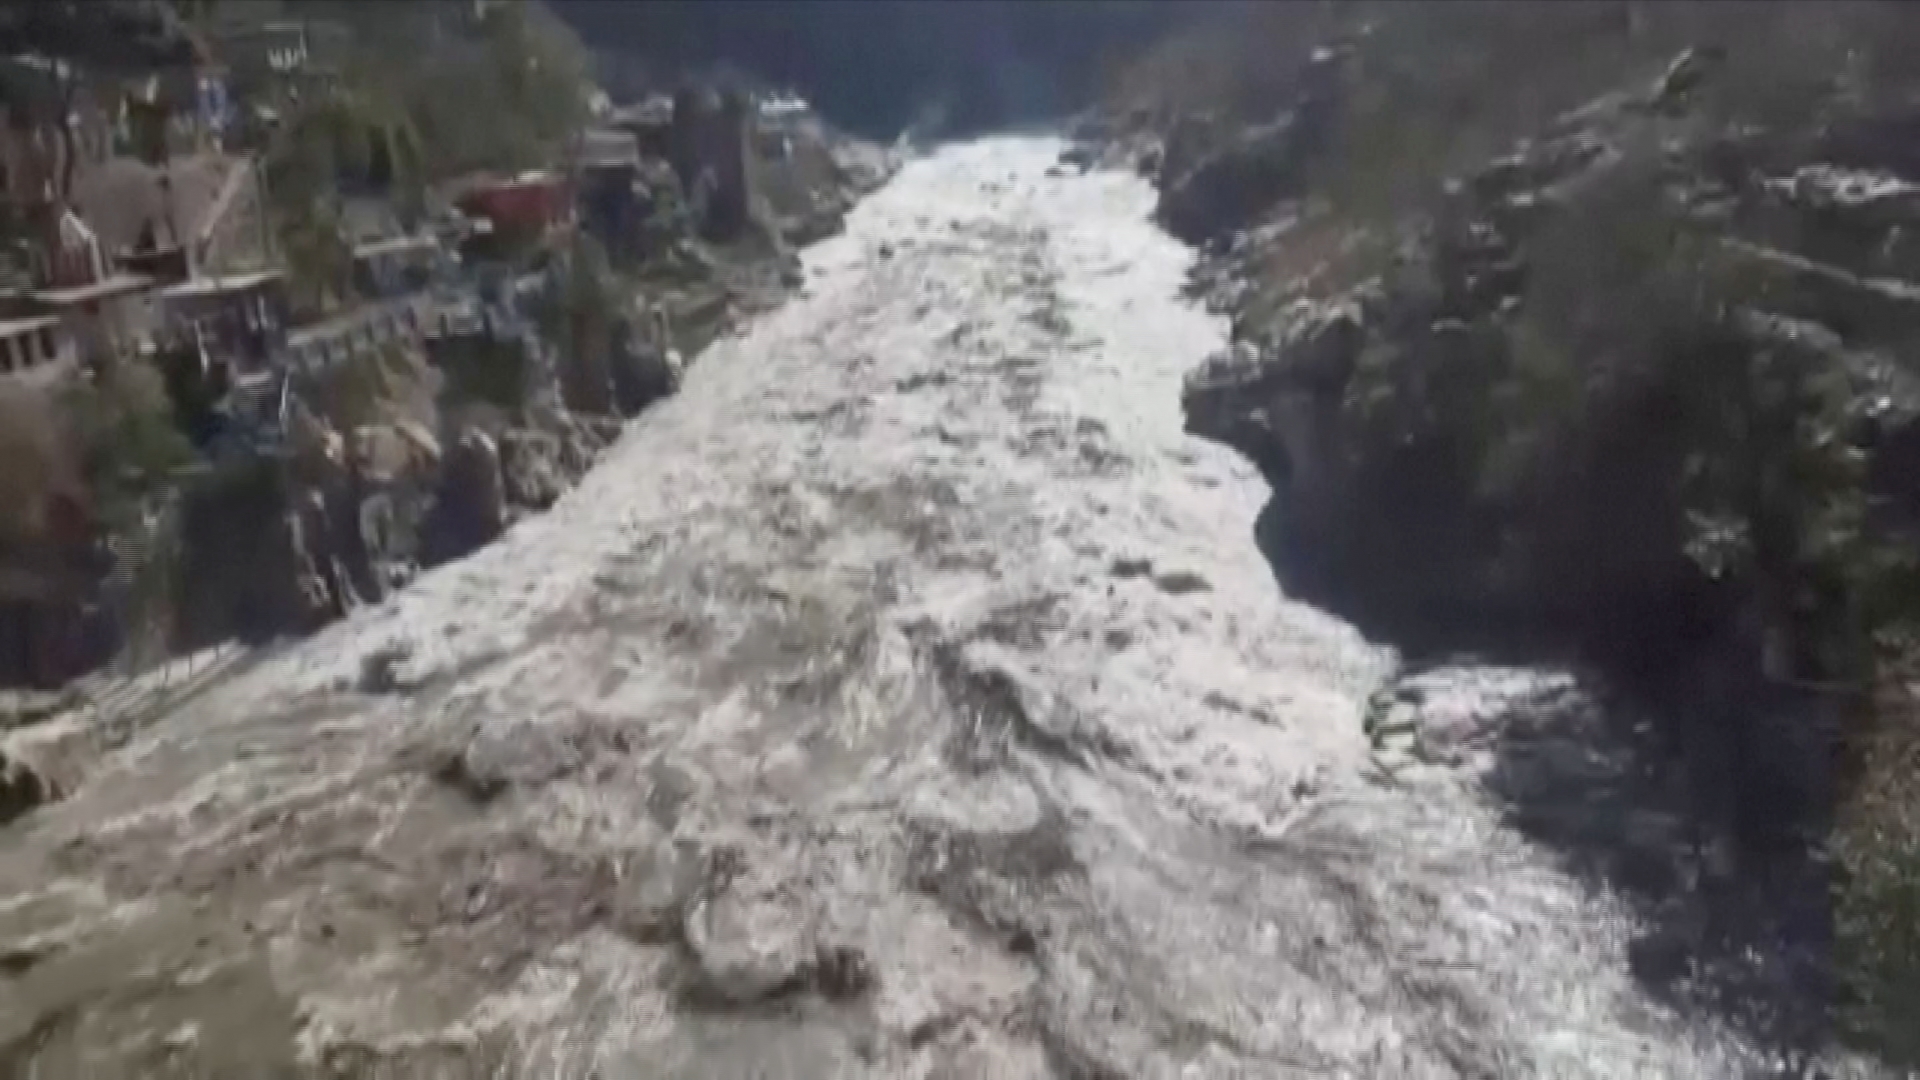 Uttarakhand floods Latest News Updates: Glacier burst leaves 14 dead, 170 missing